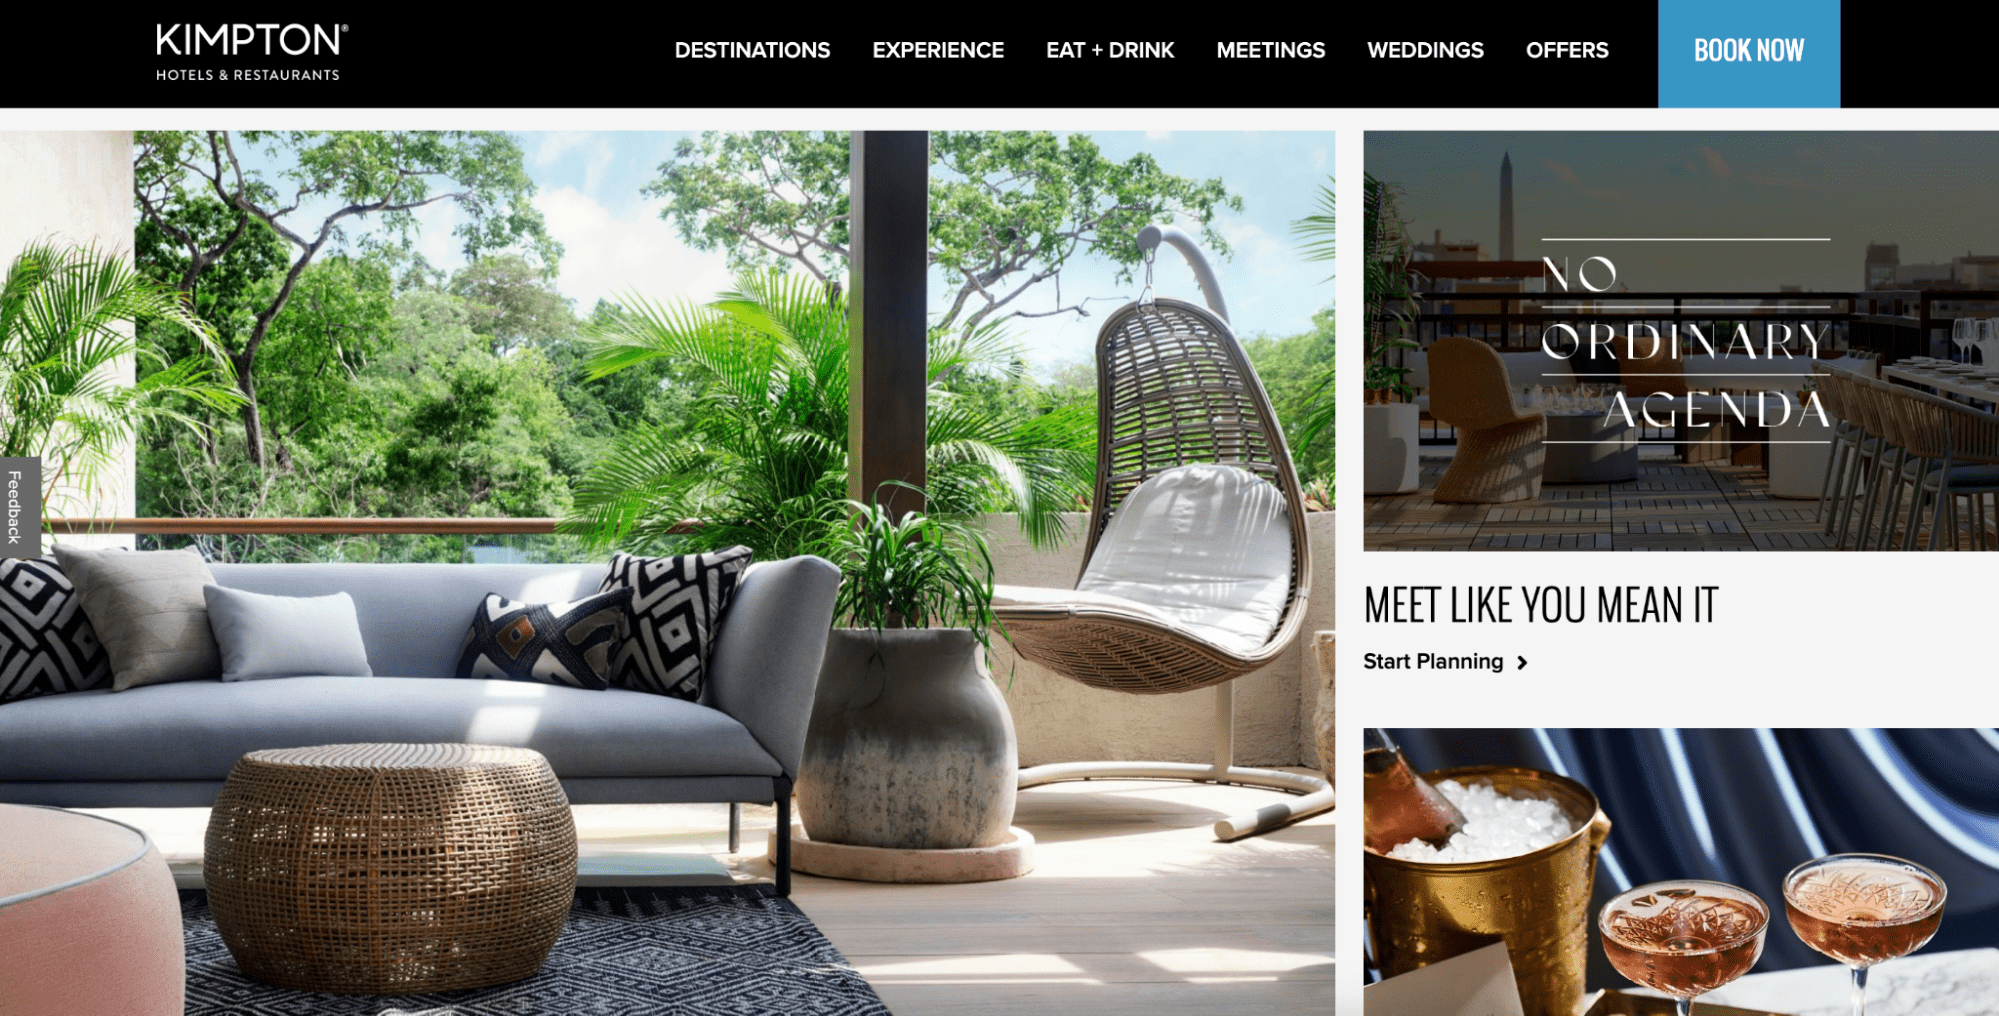 Top 6 Hotel Websites for Design Inspiration Image 1